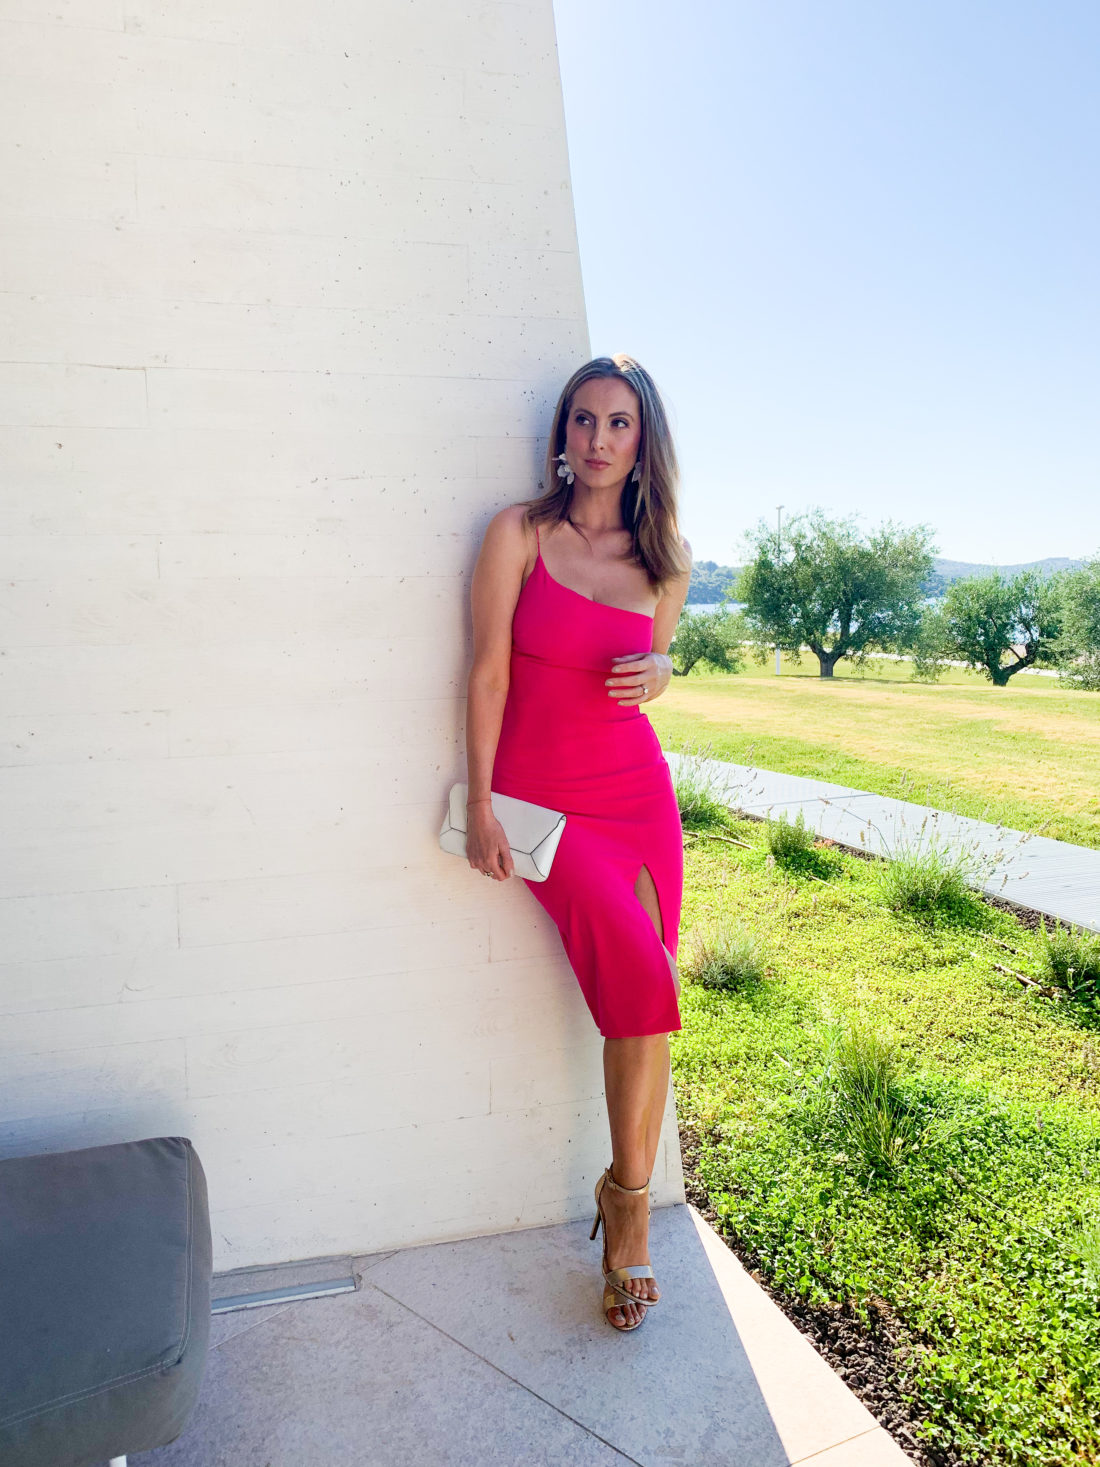 Eva Amurri Martino wears a hot pink dress in Croatia